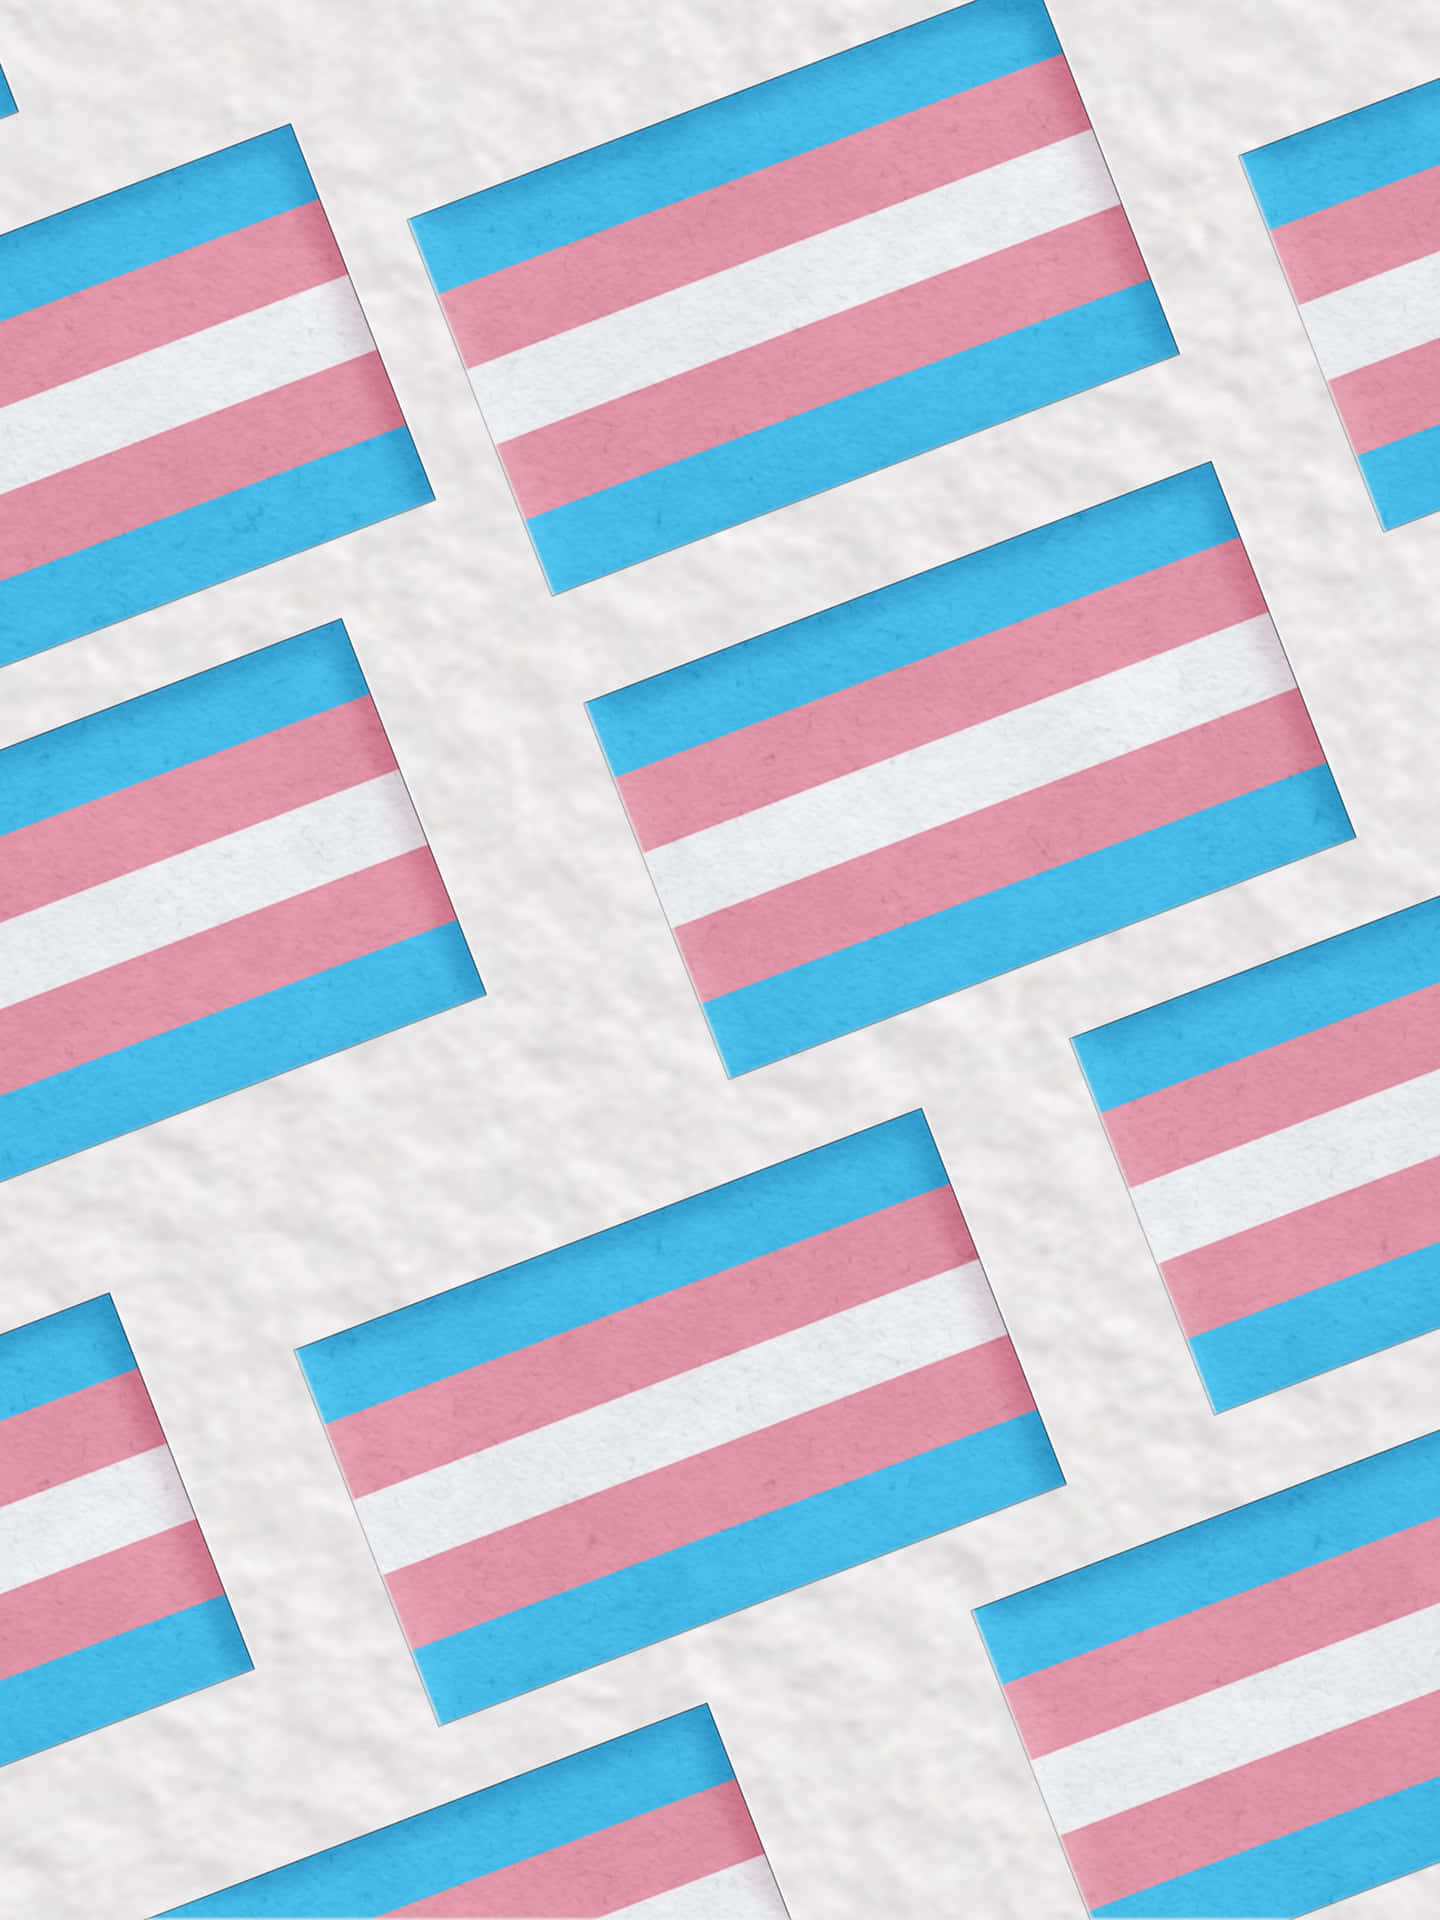 Zeigensie Ihren Stolz Und Ihre Unterstützung Für Die Transgender-community Mit Der Trans-flagge. Wallpaper